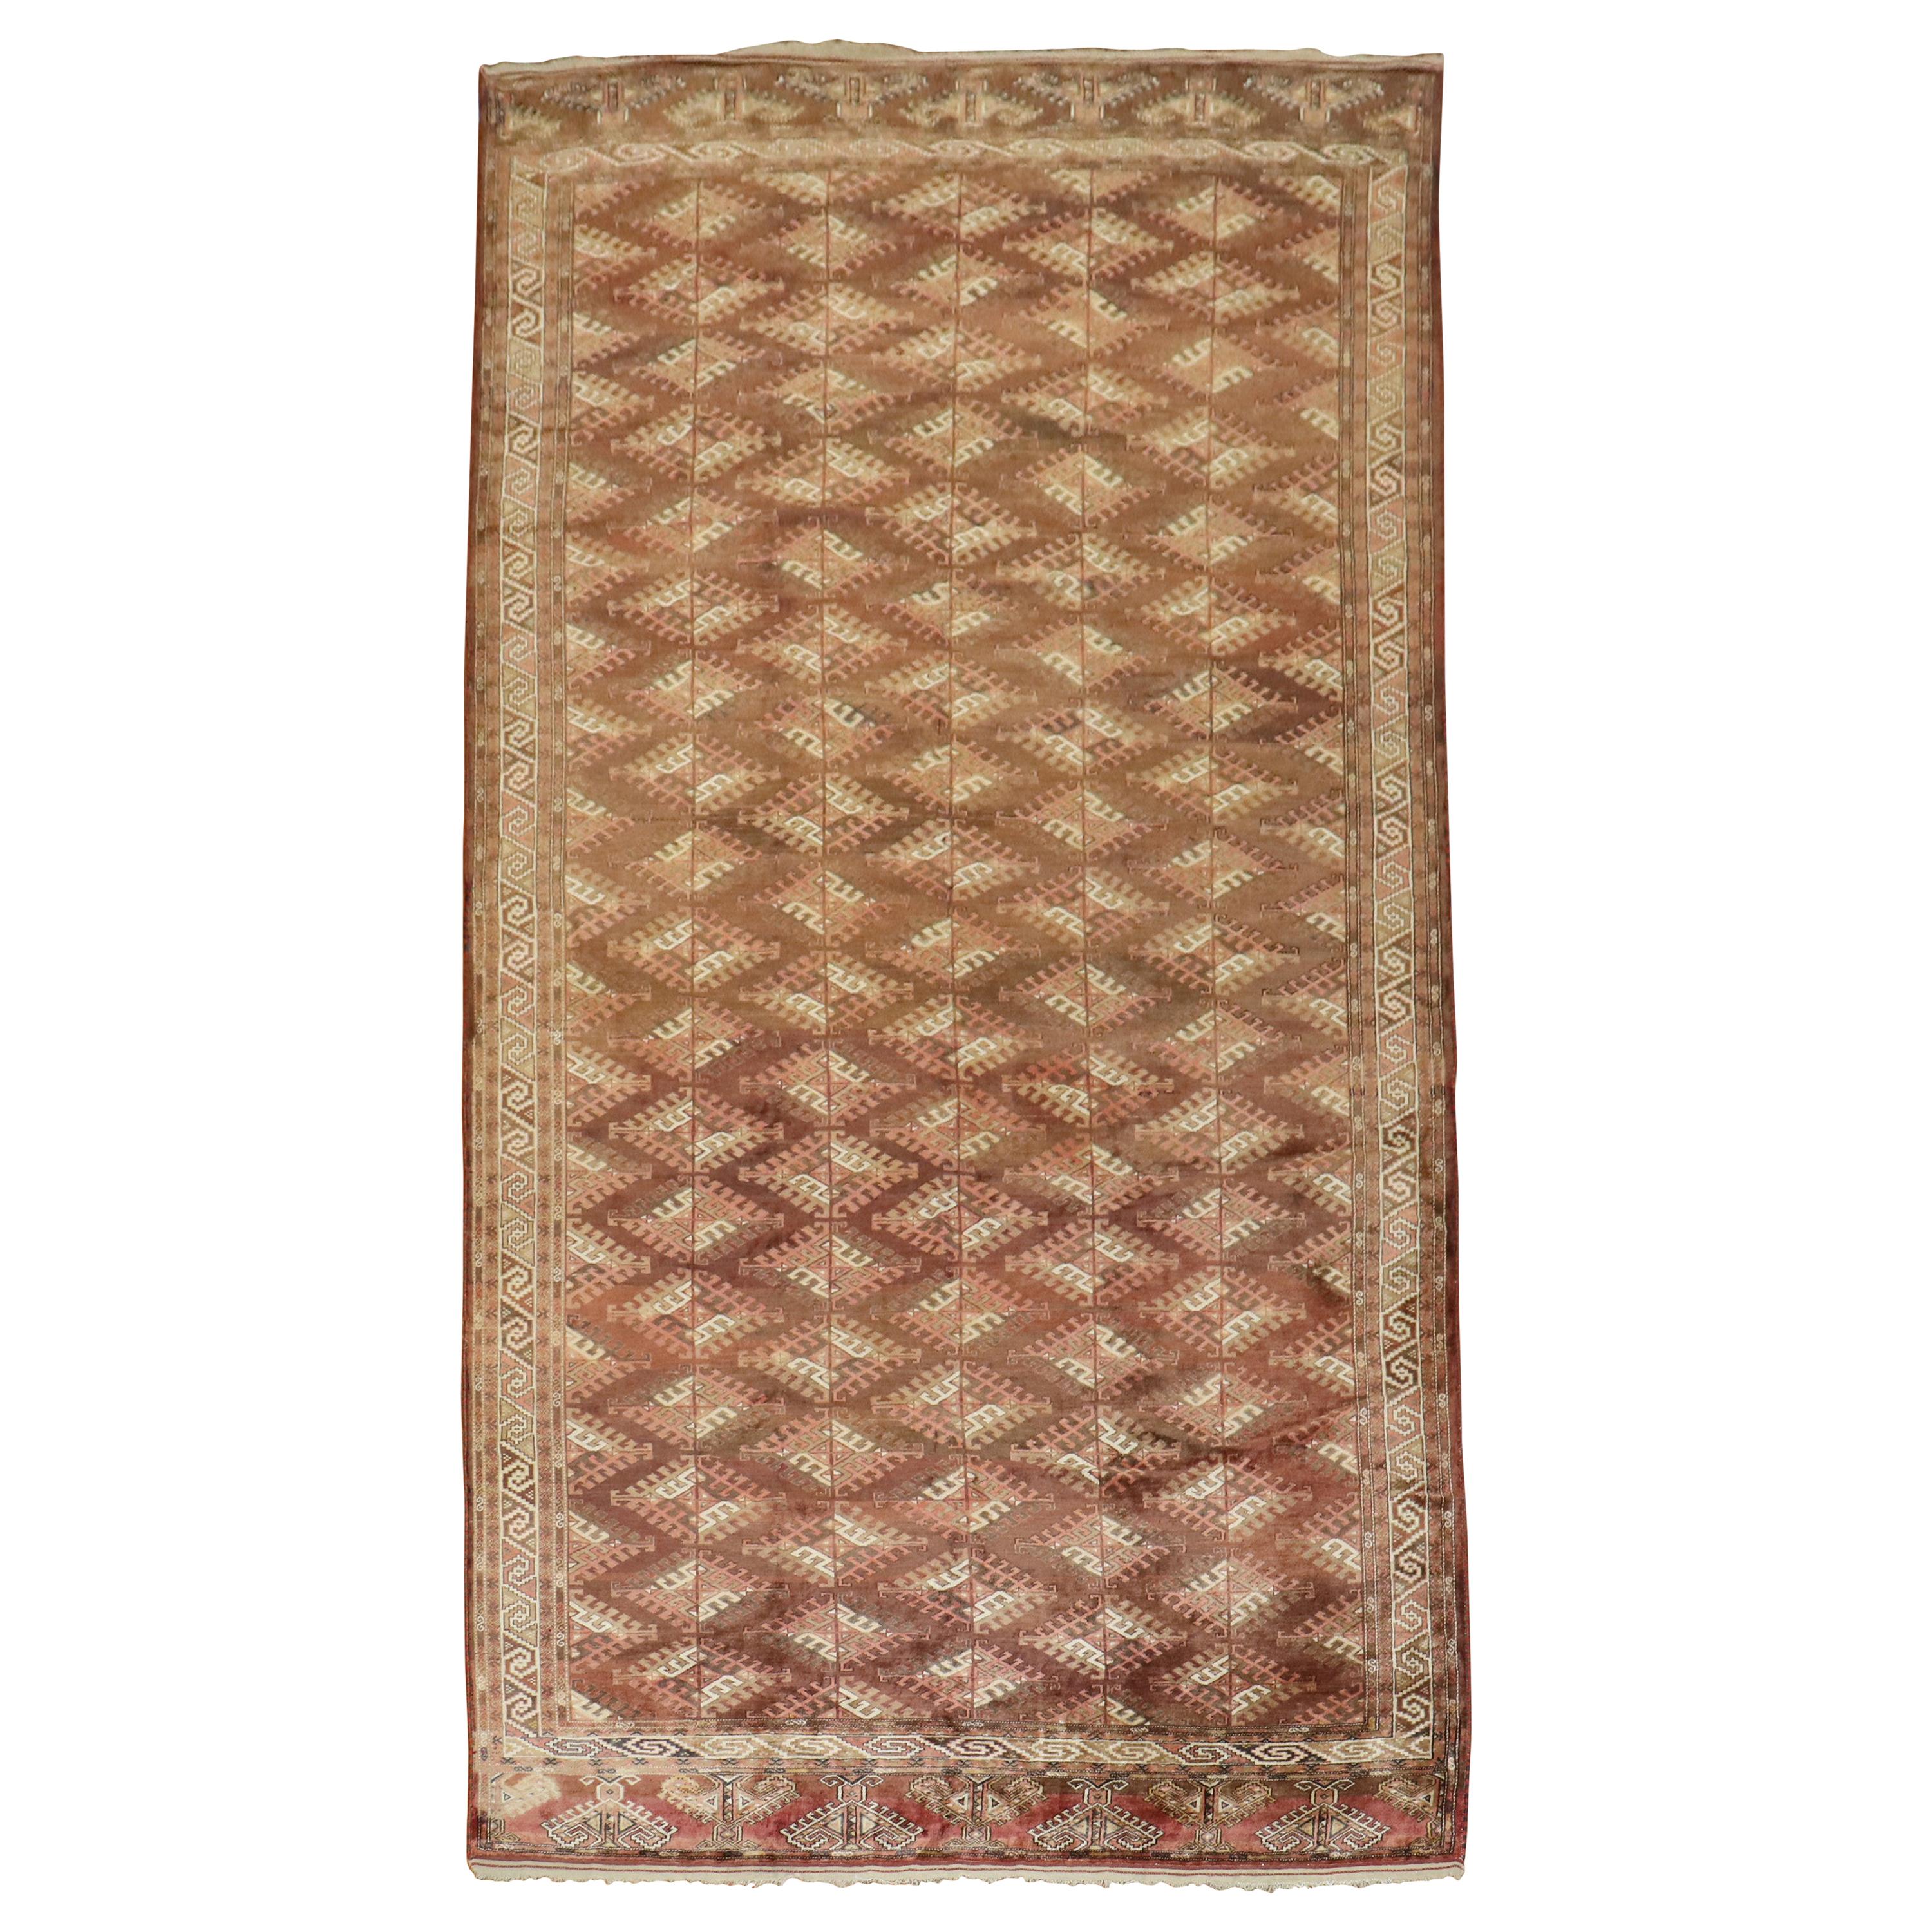 Seltener zimmergroßer Turkeman-Teppich aus der Mitte des 20. Jahrhunderts mit rustikalem Charakter in verschiedenen Rost- und Brauntönen.

Maße: 7' x 12'6